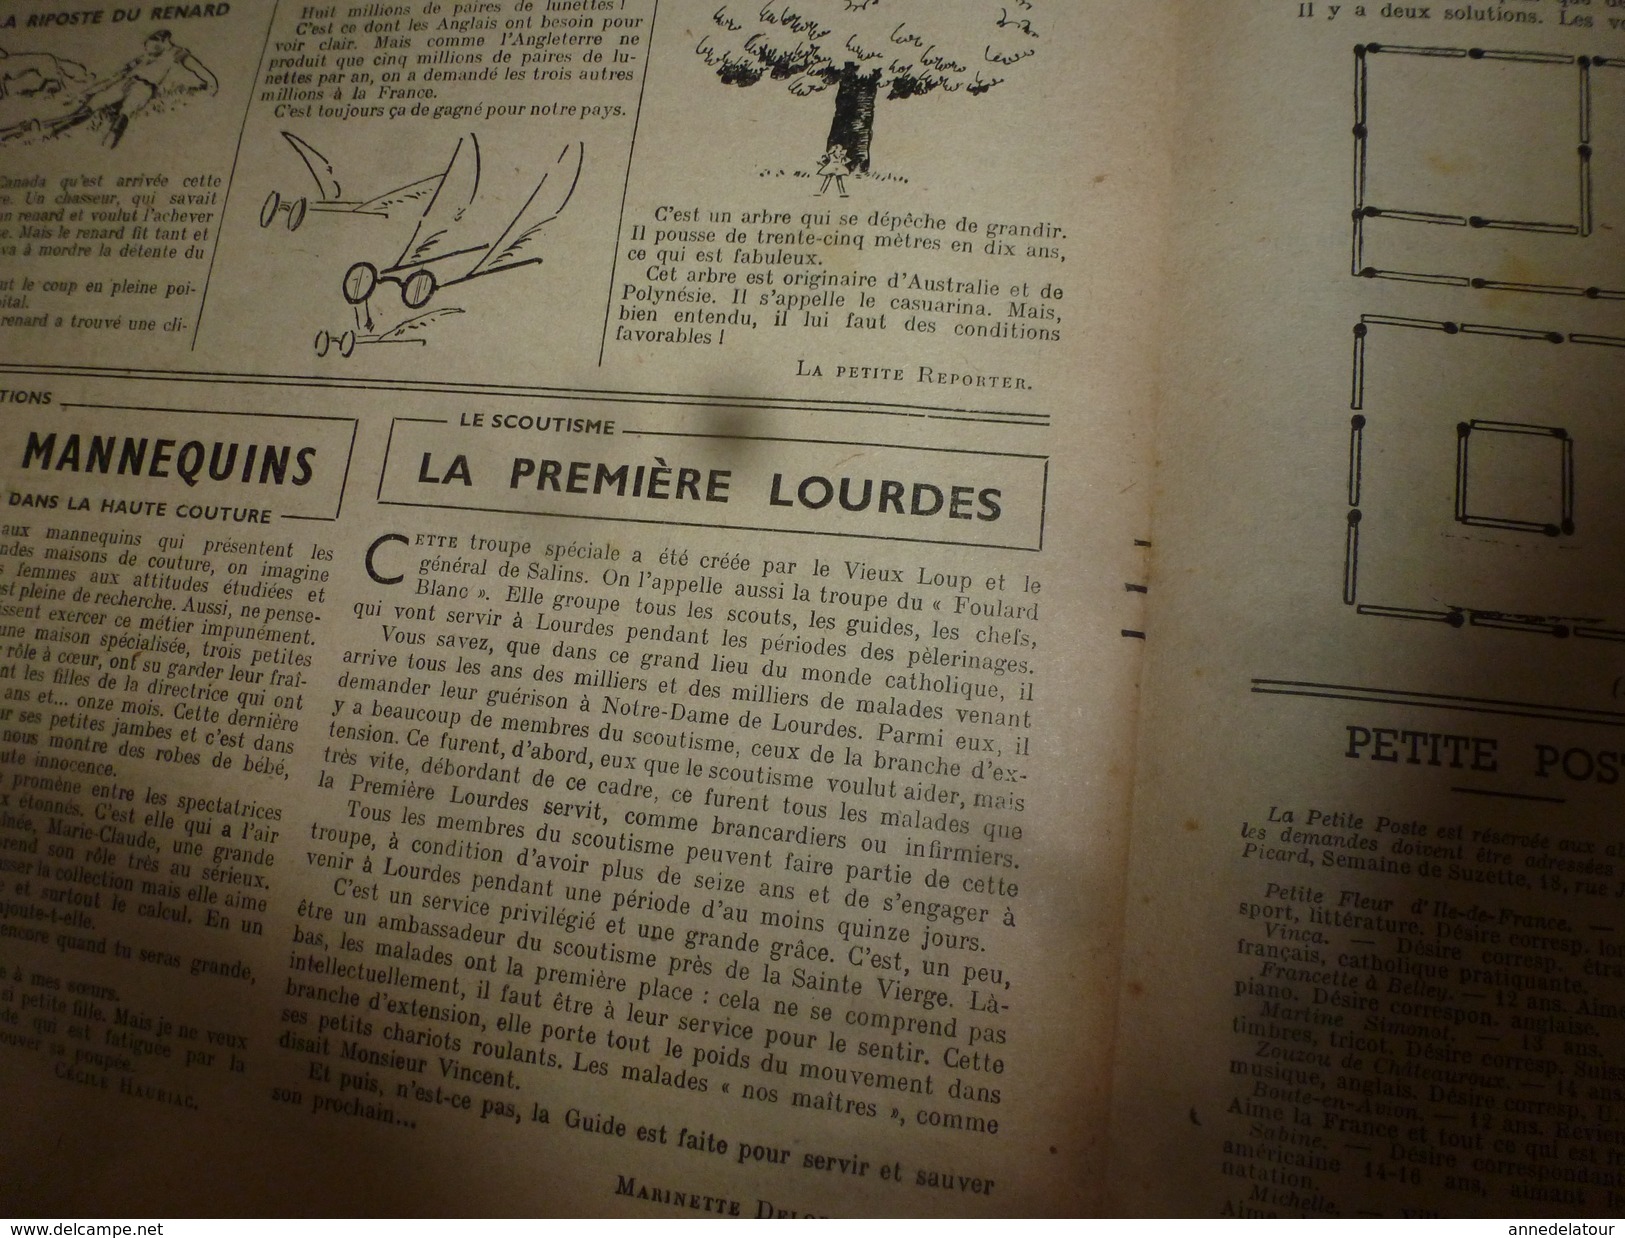 1949 LSDS  (La Semaine de Suzette) : SCOUTISME La Troupe Spéciale  PREMIERE LOURDES (La Troupe du Foulard Blanc) ; etc